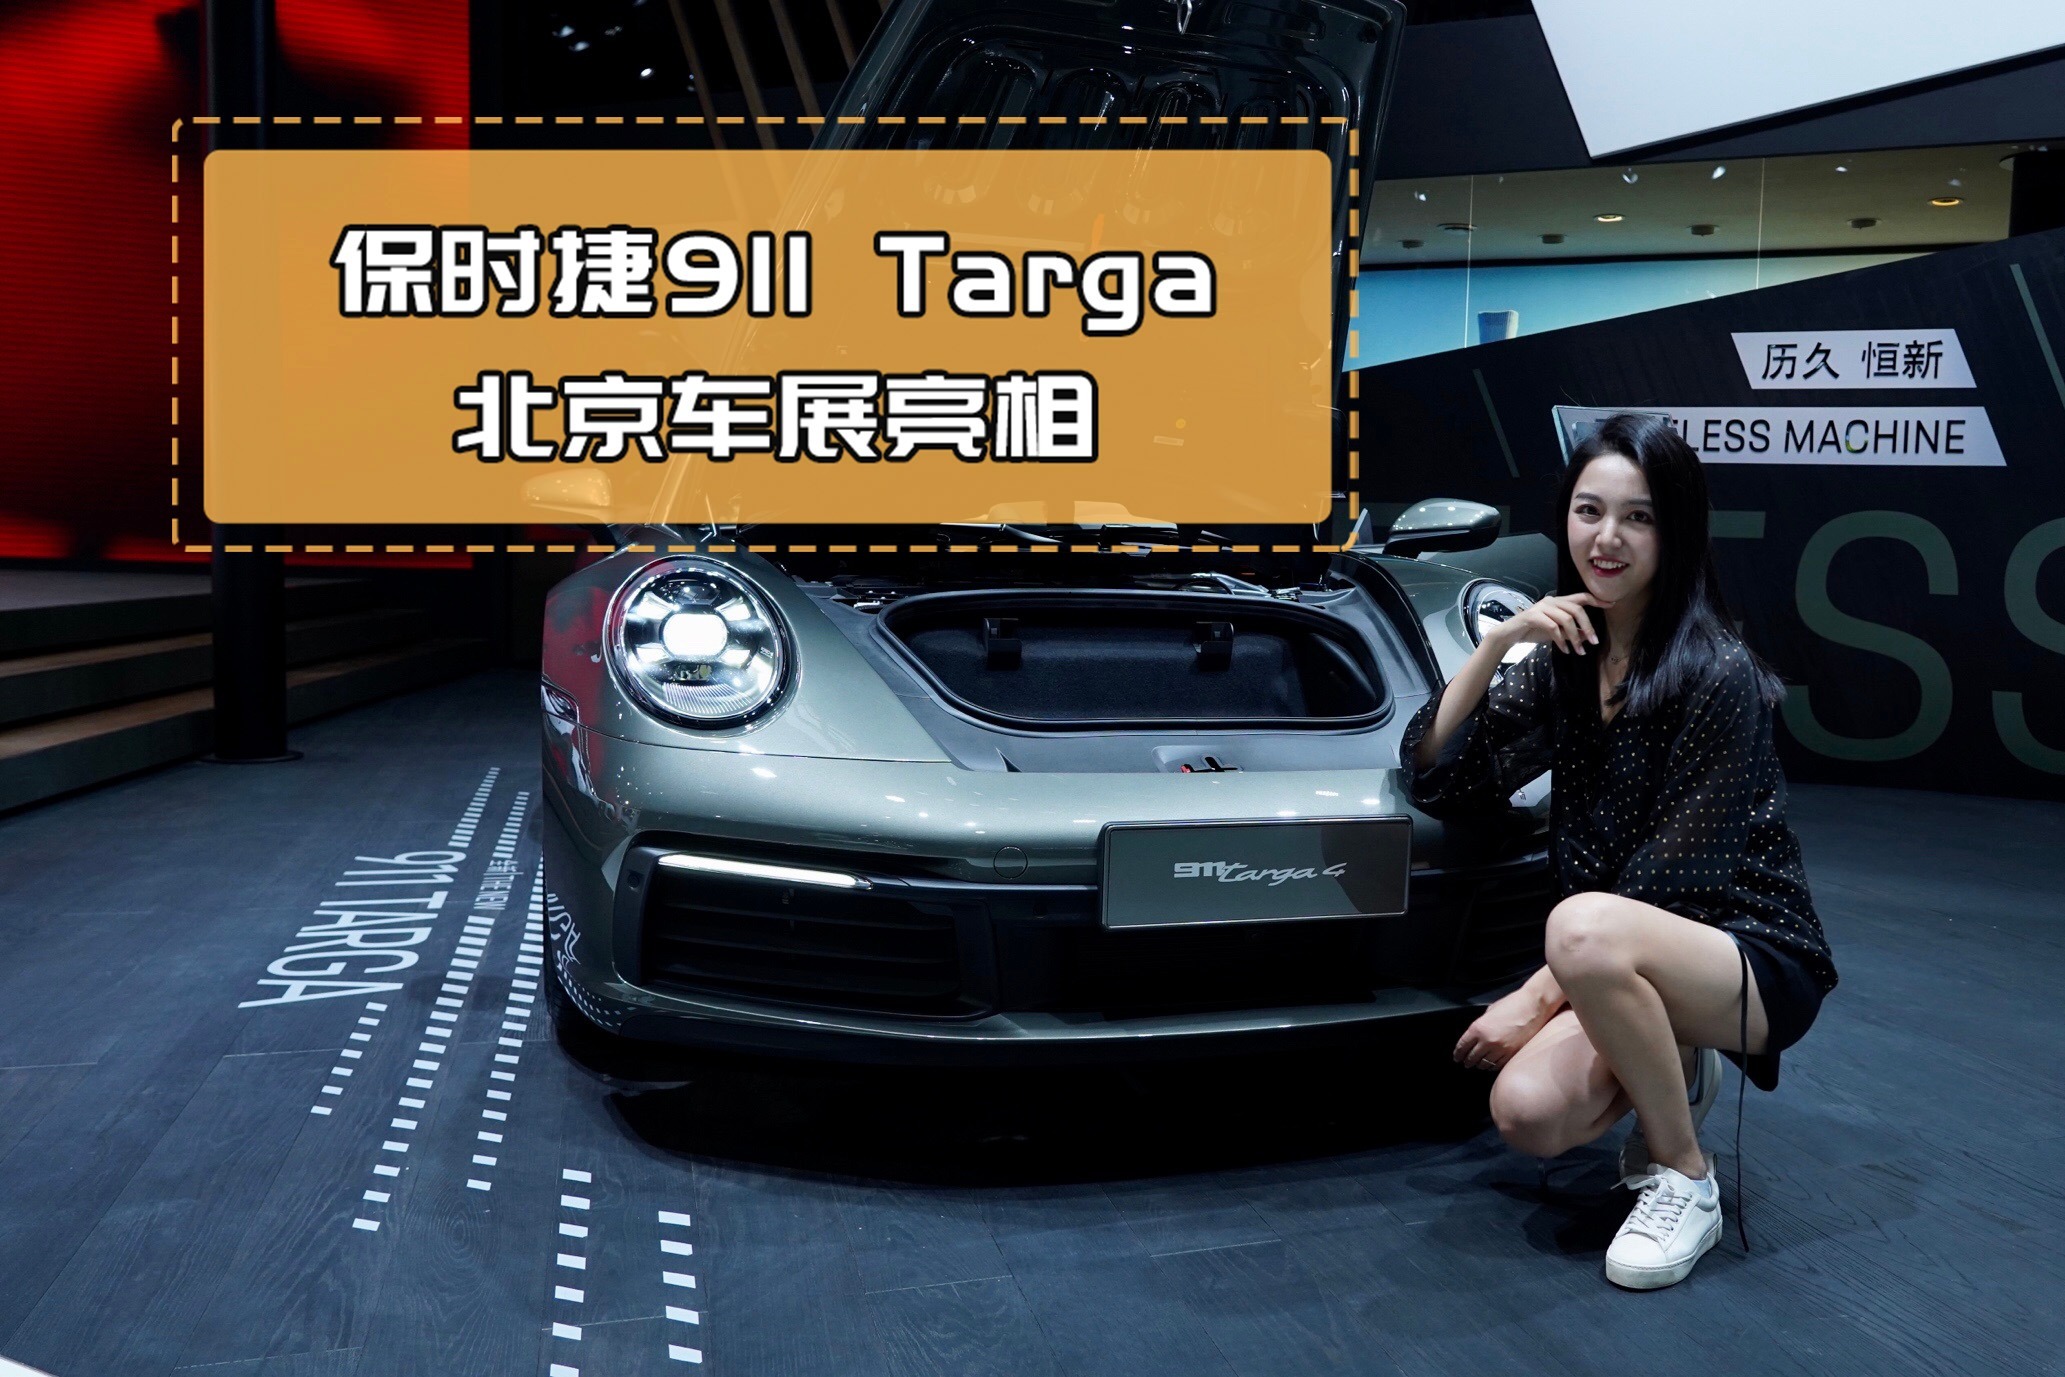 全新保时捷911 Targa在北京车展亮相啦